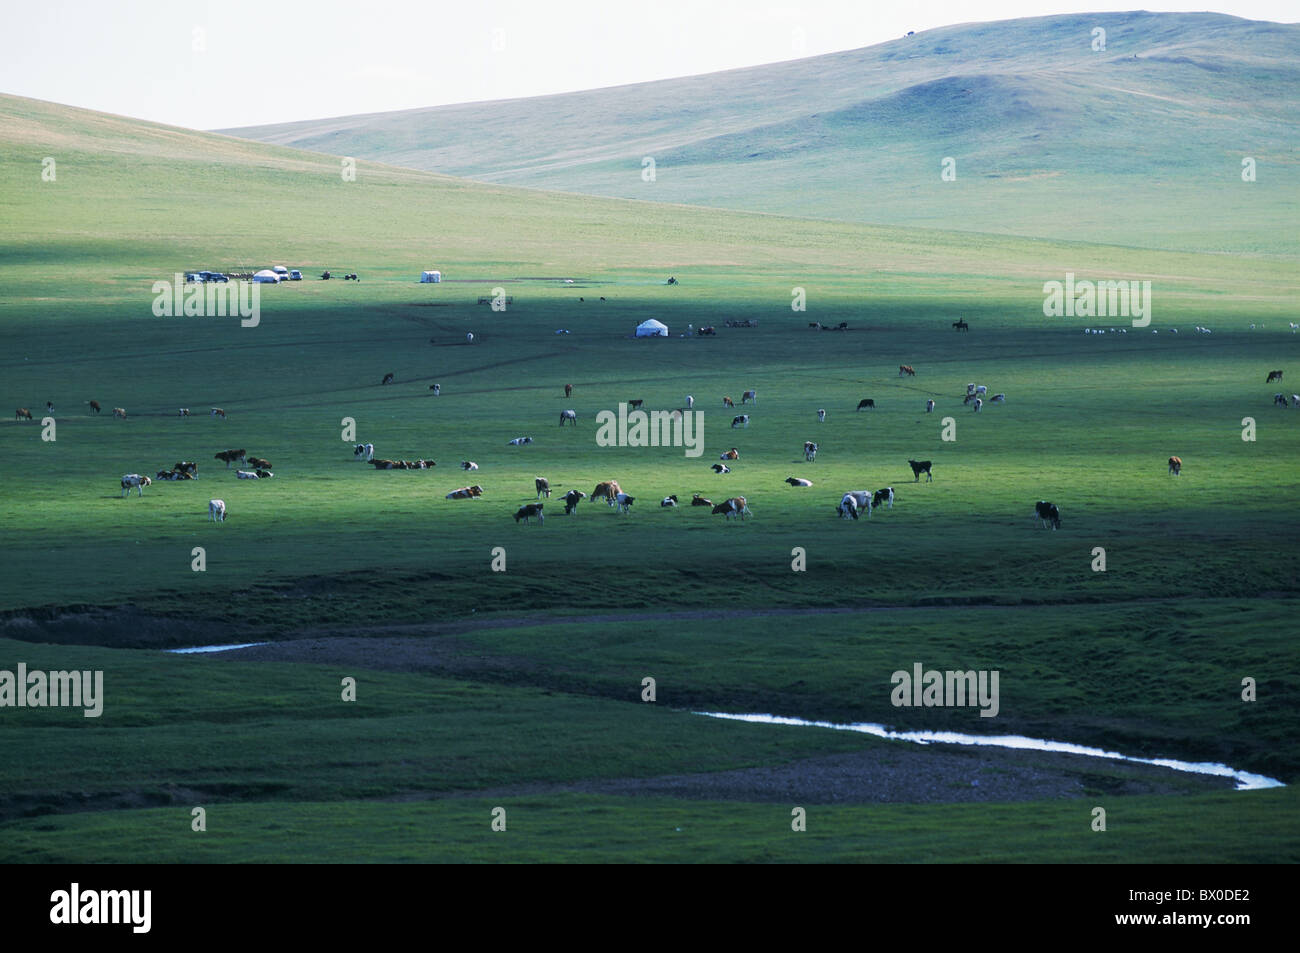 Le bétail en pâturage libre, Hulun Buir herbage, Manzhouli, Hulunbuir, région autonome de Mongolie intérieure, Chine Banque D'Images